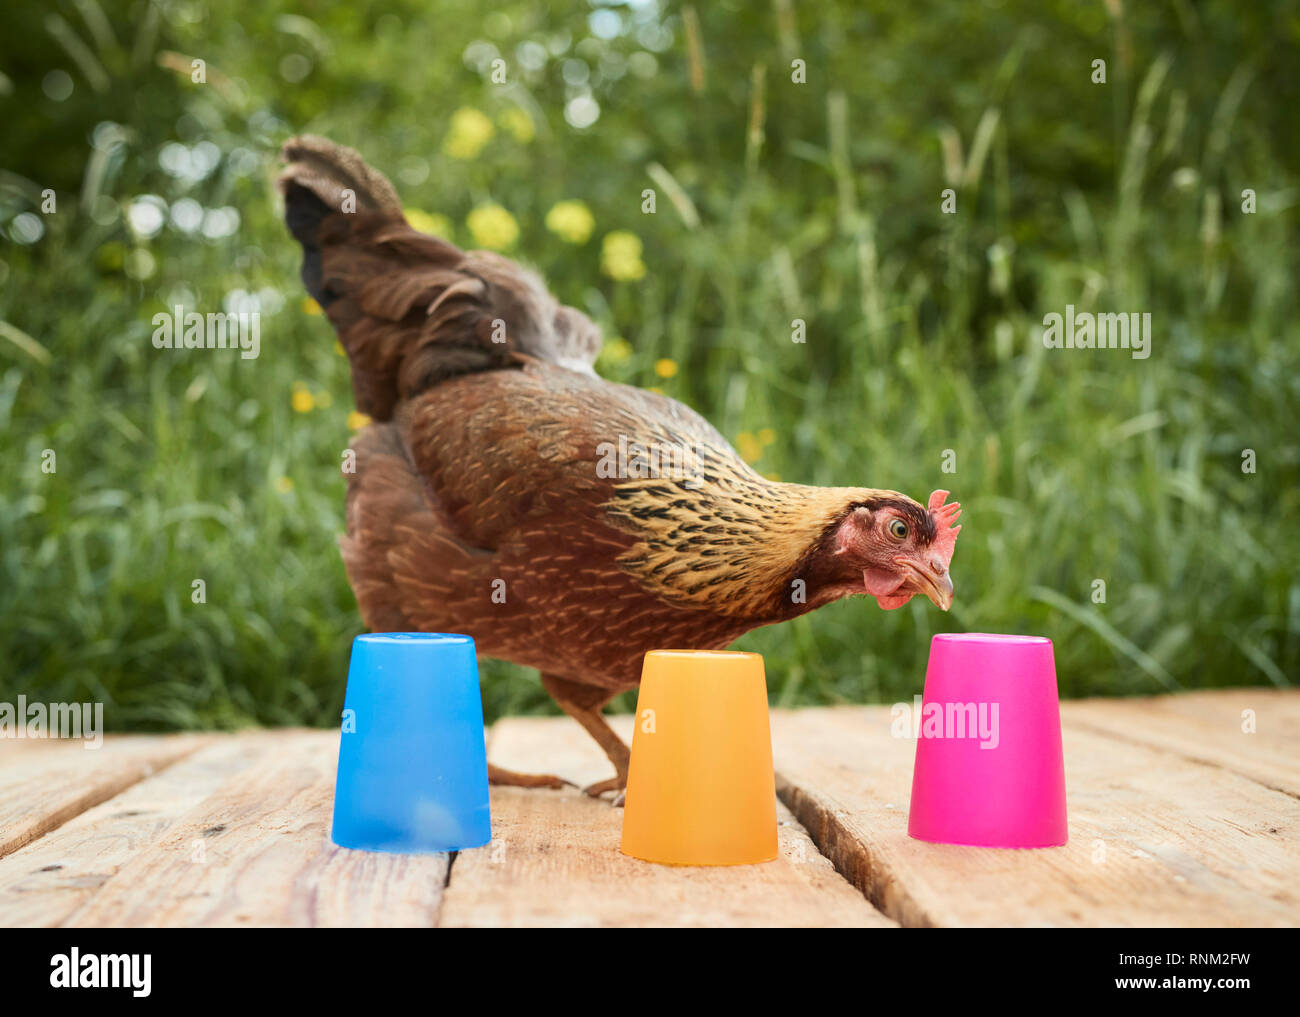 Welsummer poulet. Poule dans un jardin, à la recherche de friandises cachées sous tasses colorées. Test des couleurs et de l'intelligence test. Allemagne Banque D'Images